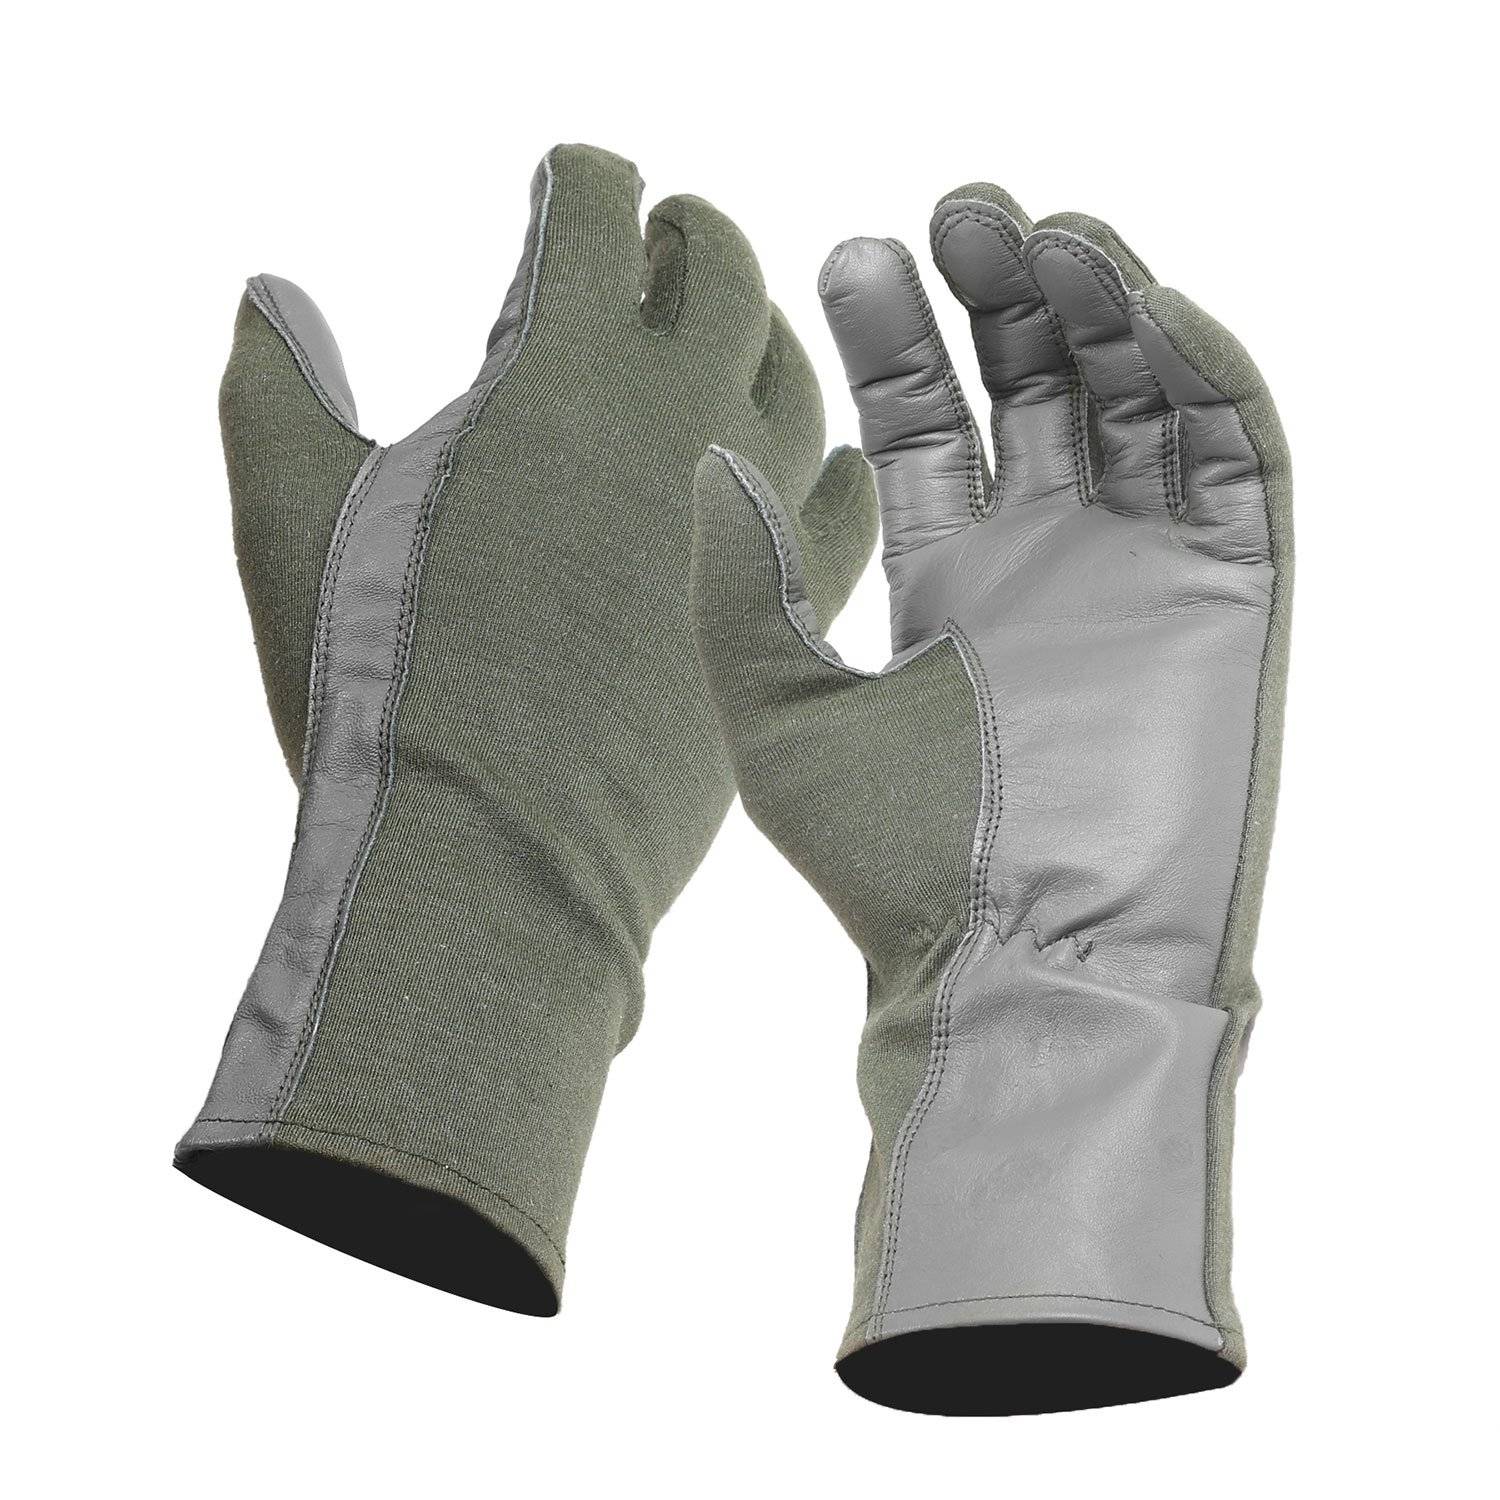 5ive Star Gear Flight Gloves